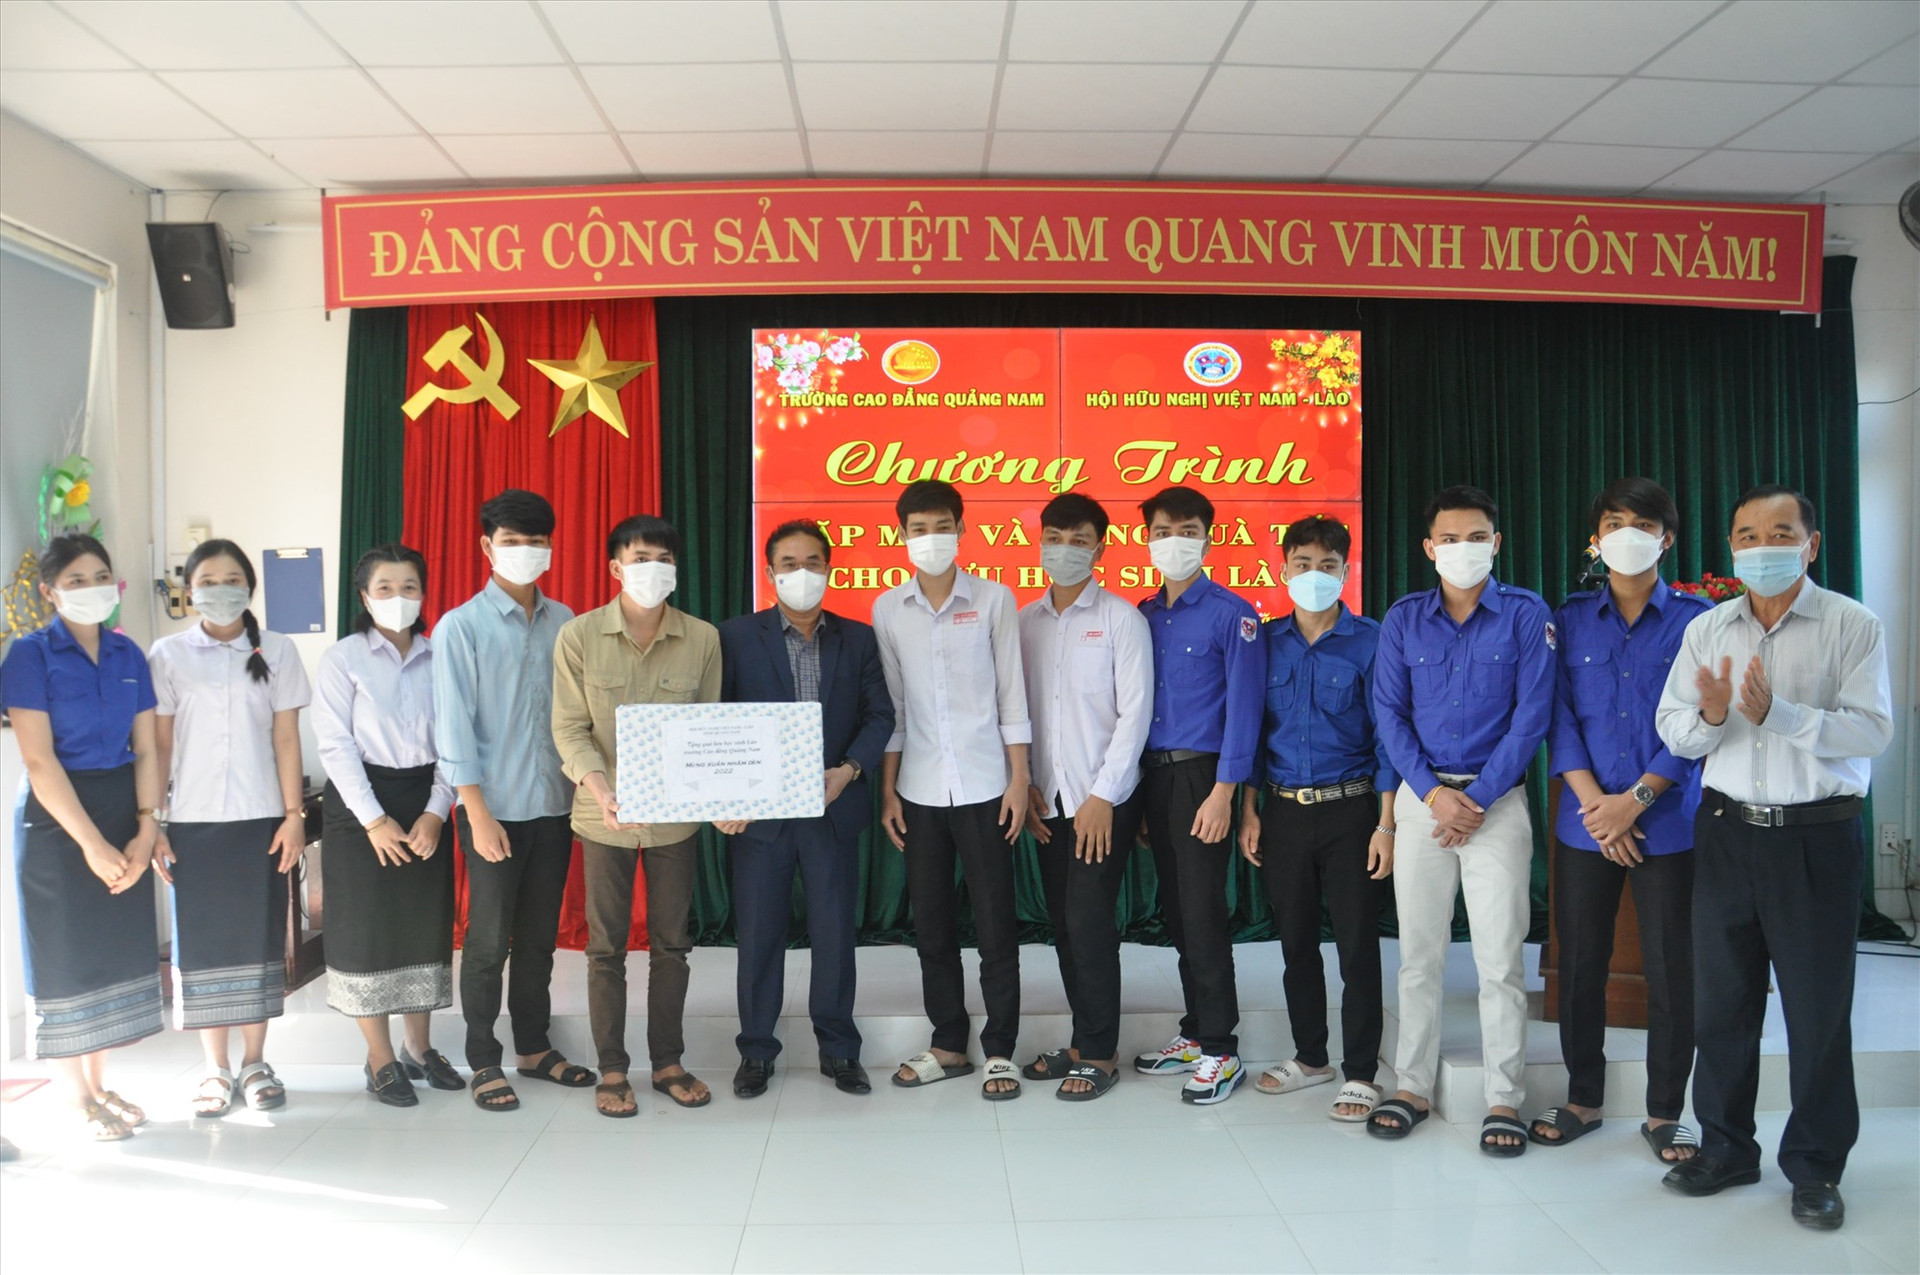 Phó Chủ tịch UBND tỉnh Trần Anh Tuấn tặng quà cho lưu học sinh Trường Cao đẳng Quảng Nam. Ảnh: X.P